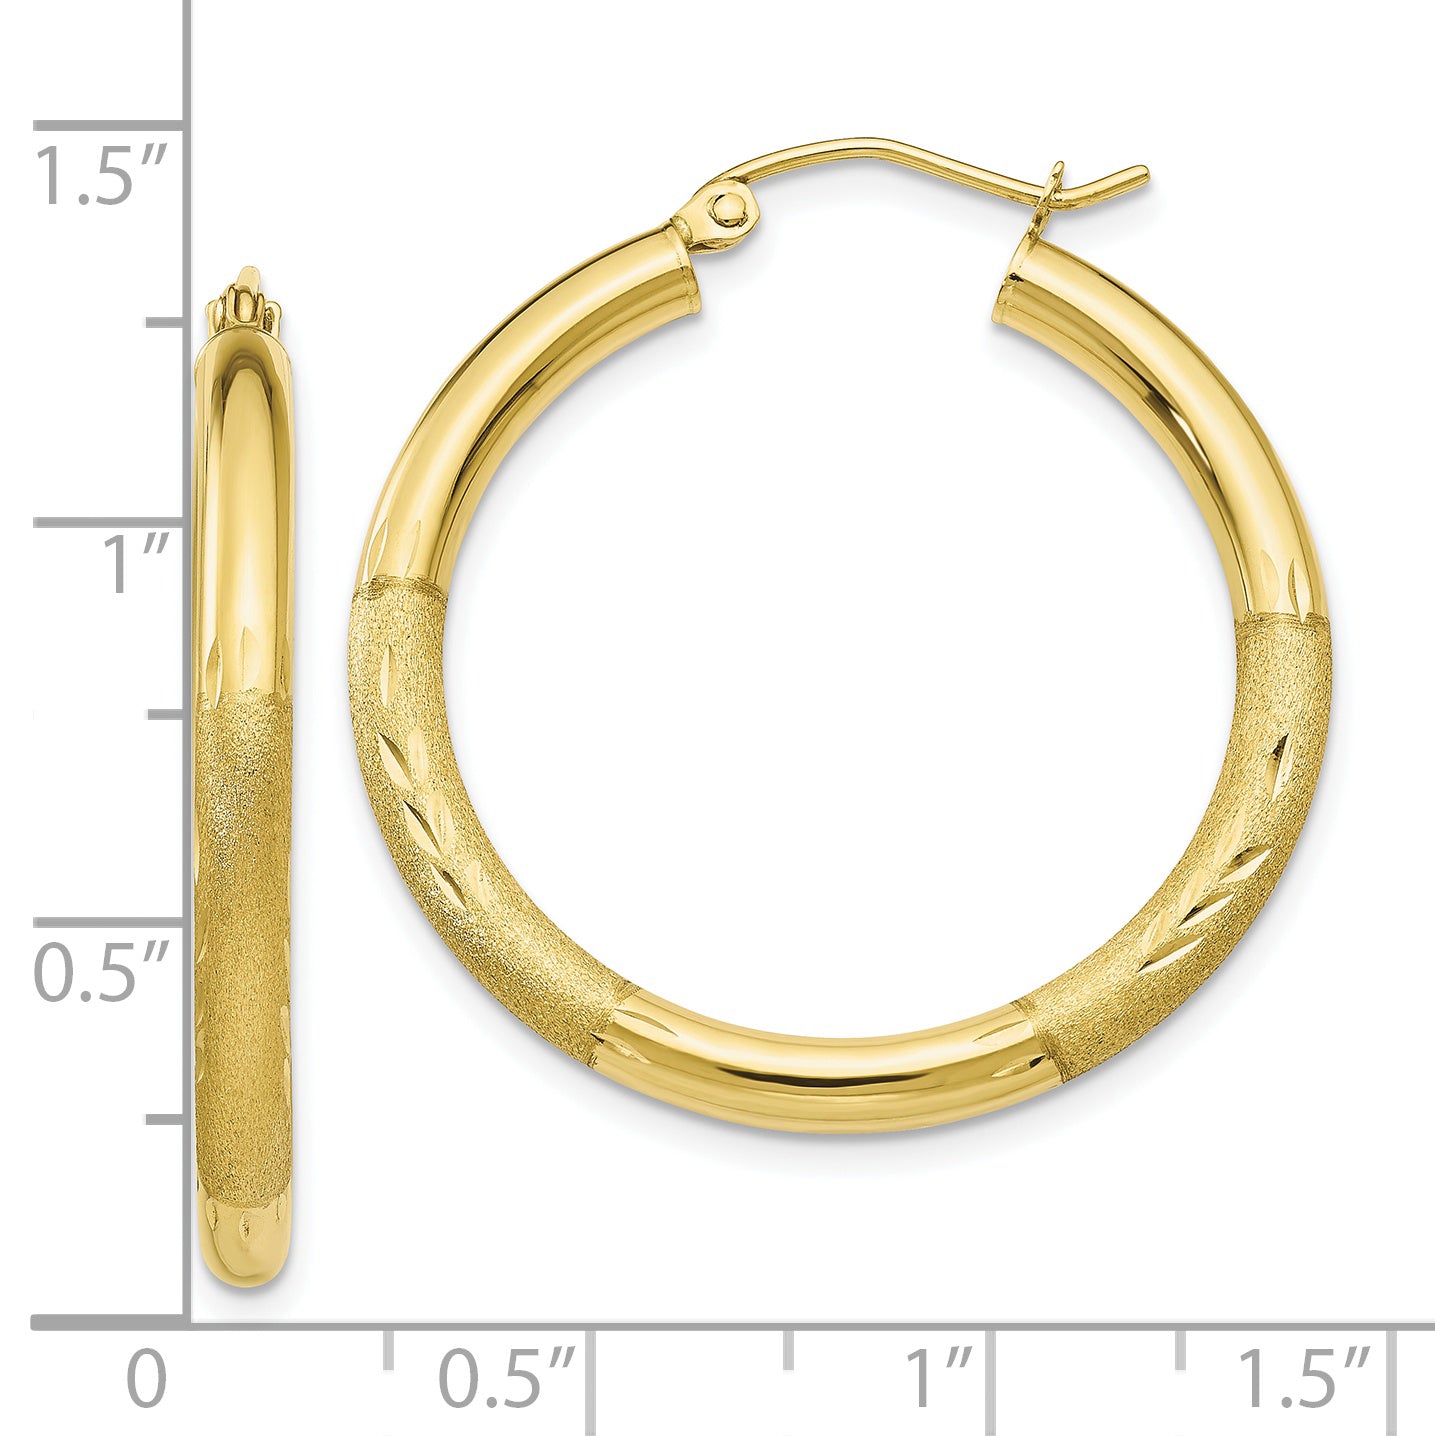 10k Satin & Diamond-cut 3mm Round Hoop Earrings